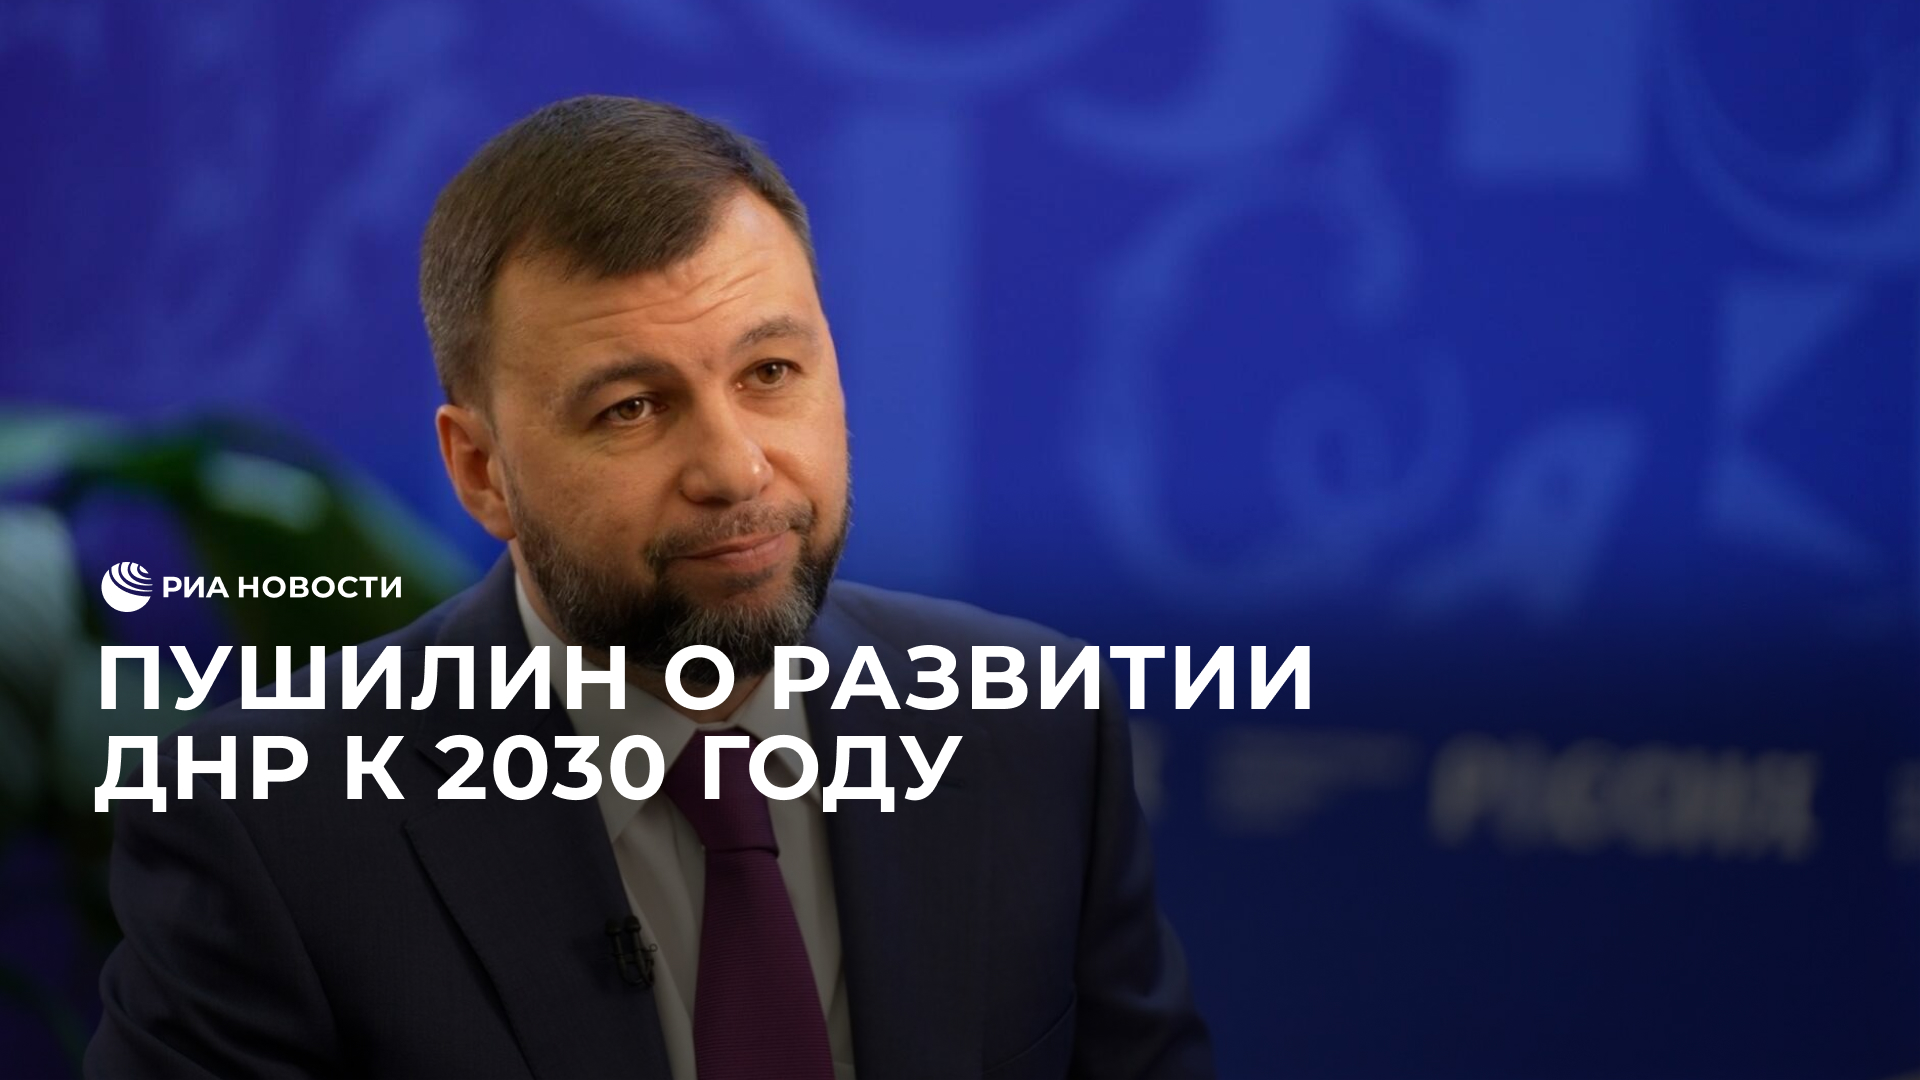 Пушилин о развитии ДНР к 2030 году